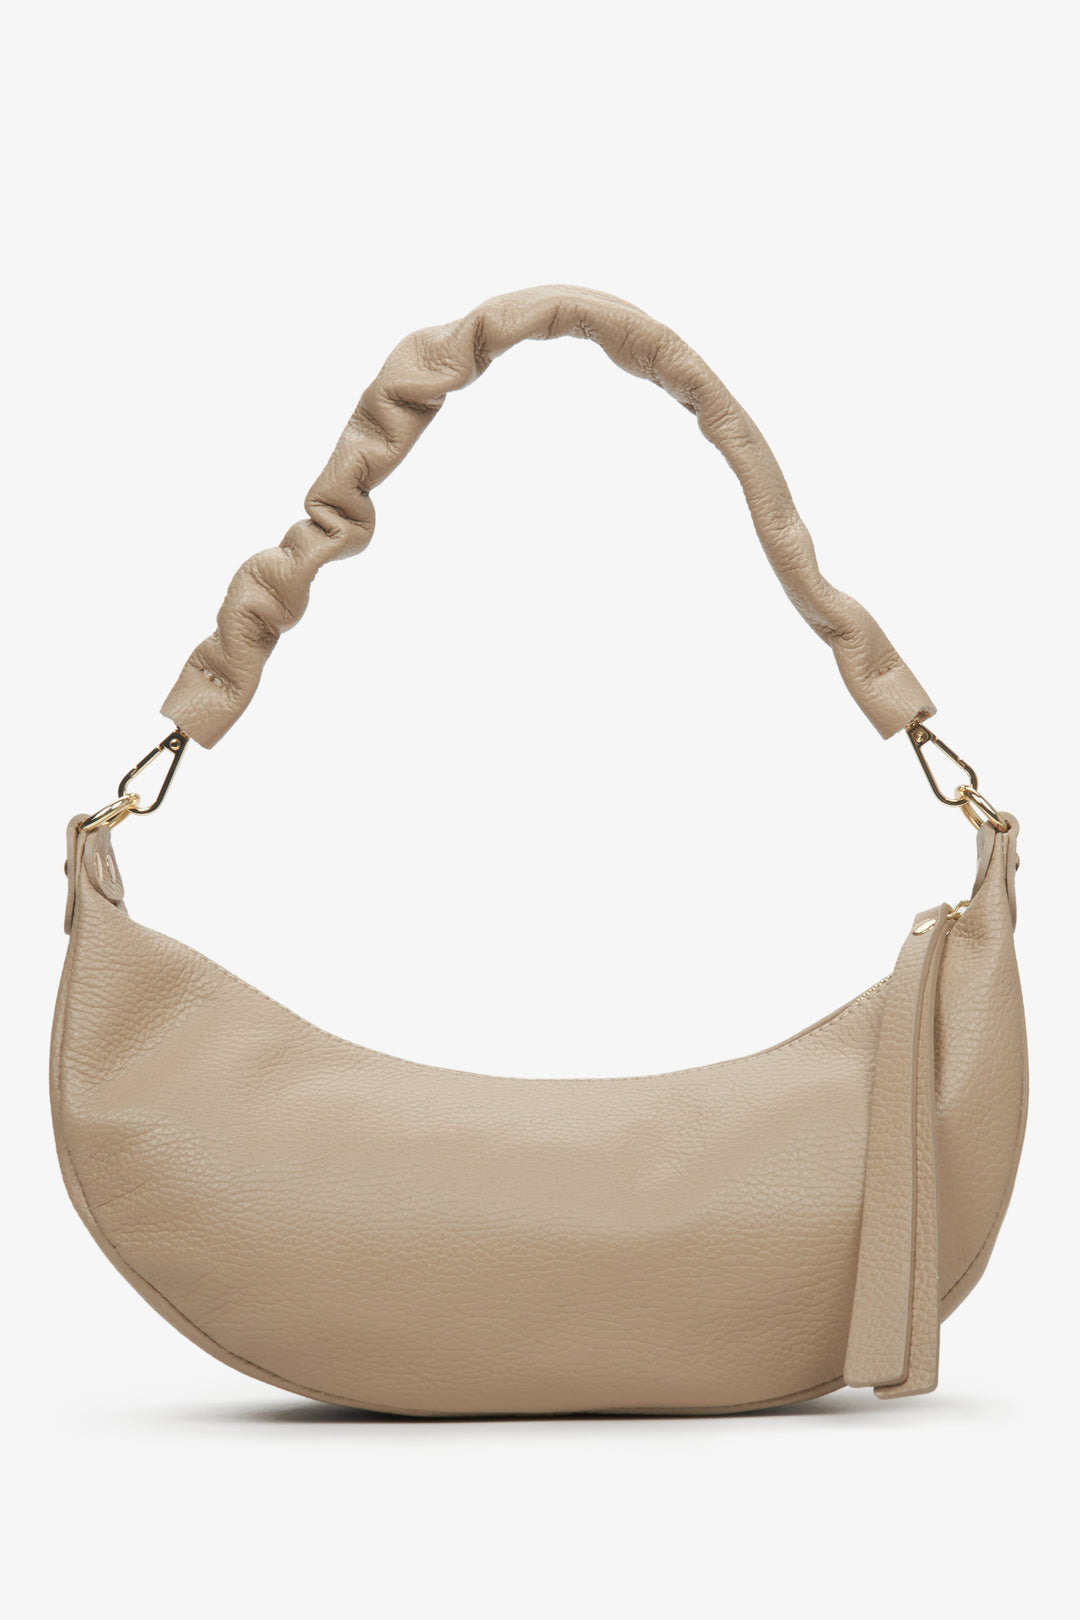 Beige half-moon shoulder bag made of natural leather by Estro.